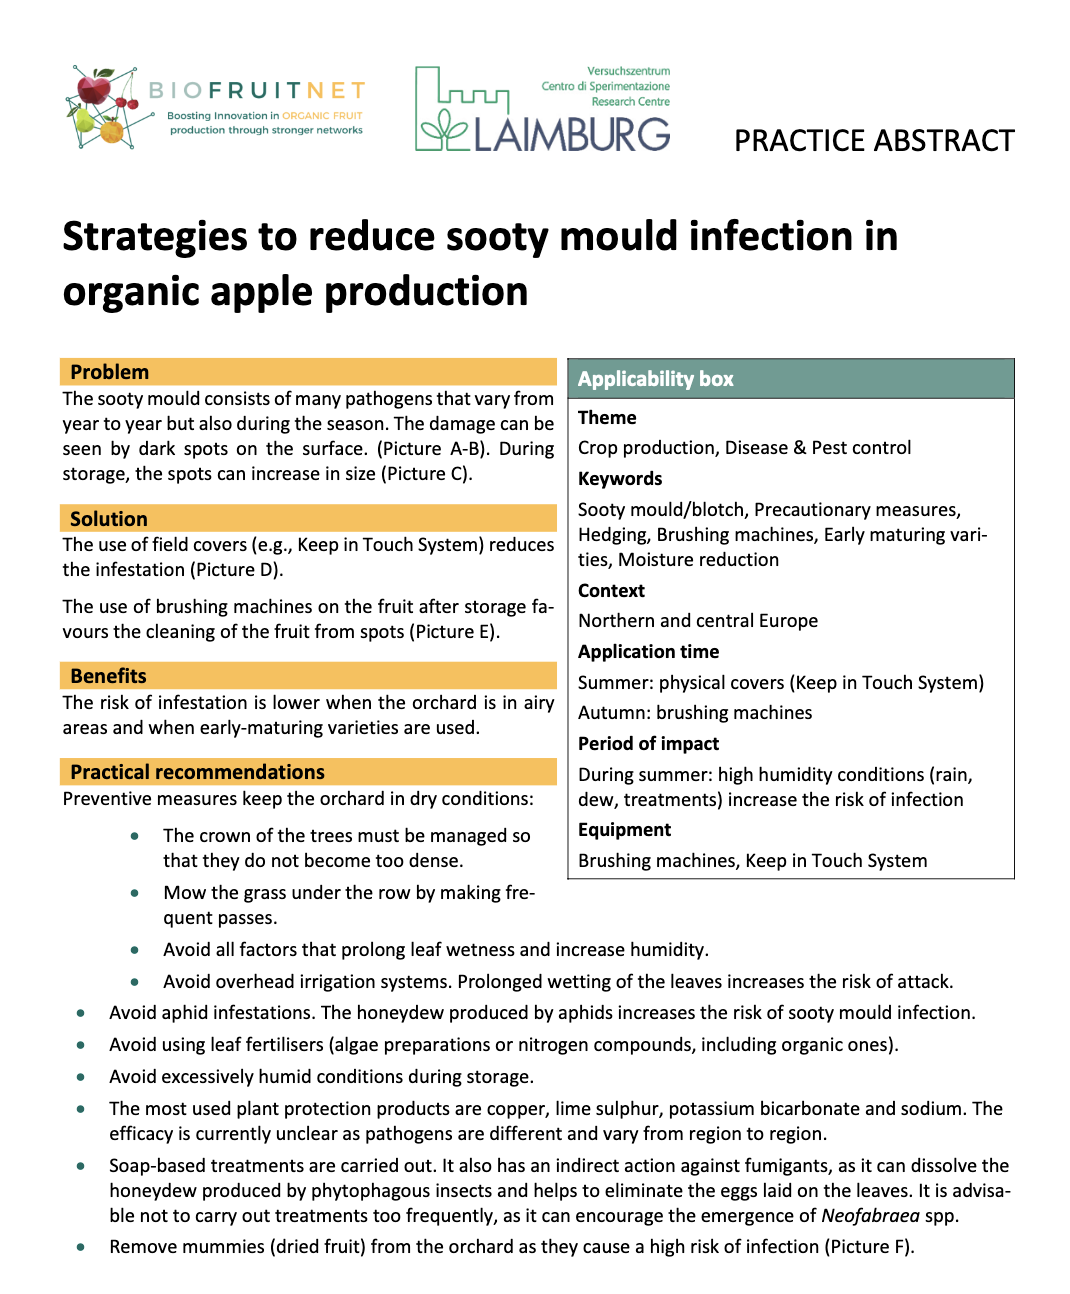 Strategie ograniczania infekcji pleśnią sadzy w ekologicznej produkcji jabłek (streszczenie praktyki BIOFRUITNET)